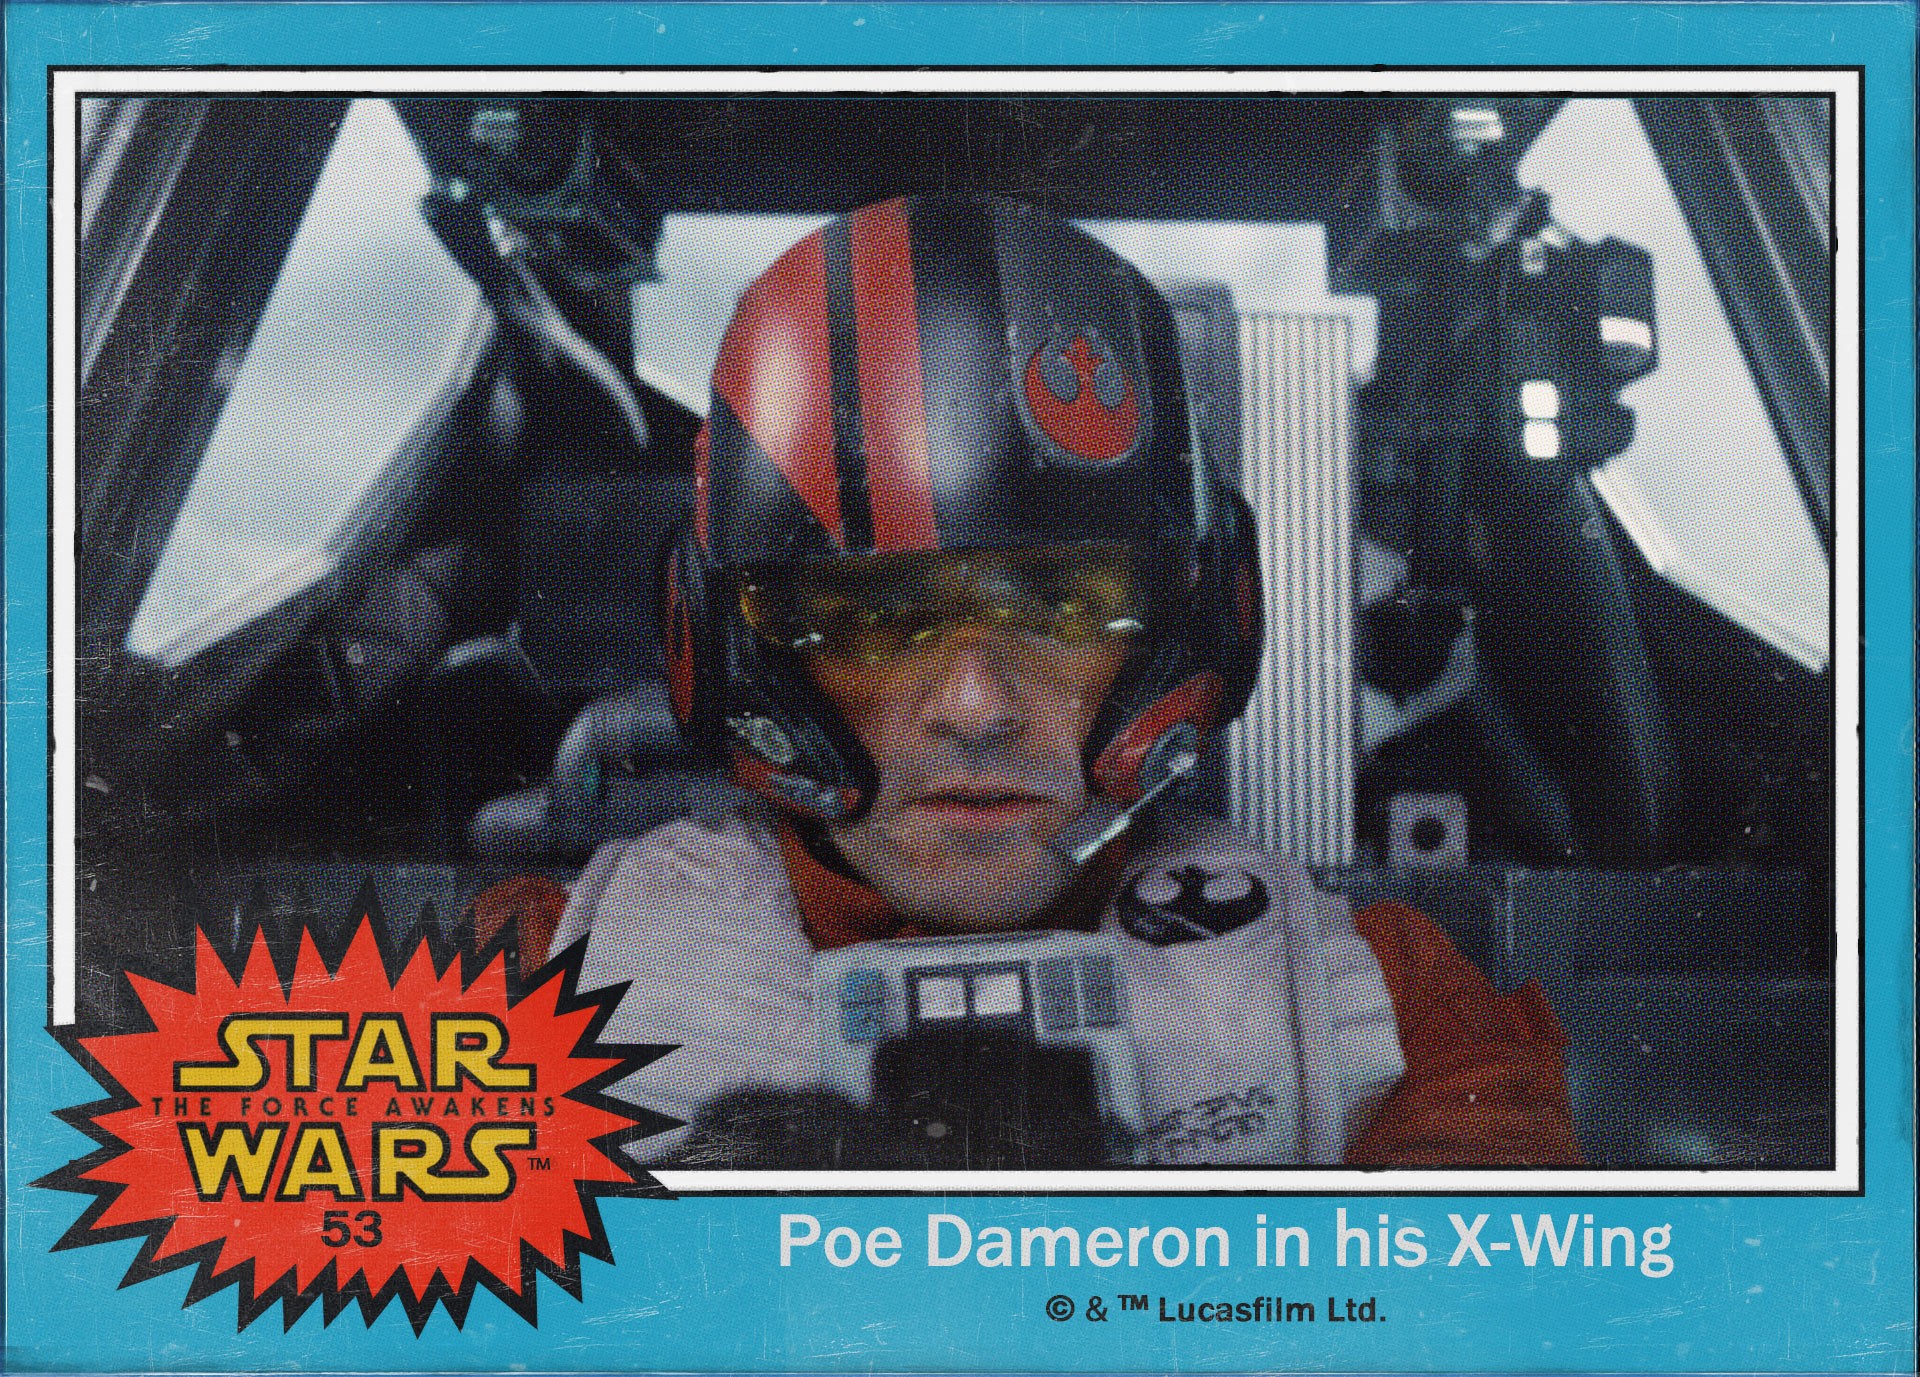 Poe Dameron no comando de uma X-Wing clássica (Foto: Divulgação)